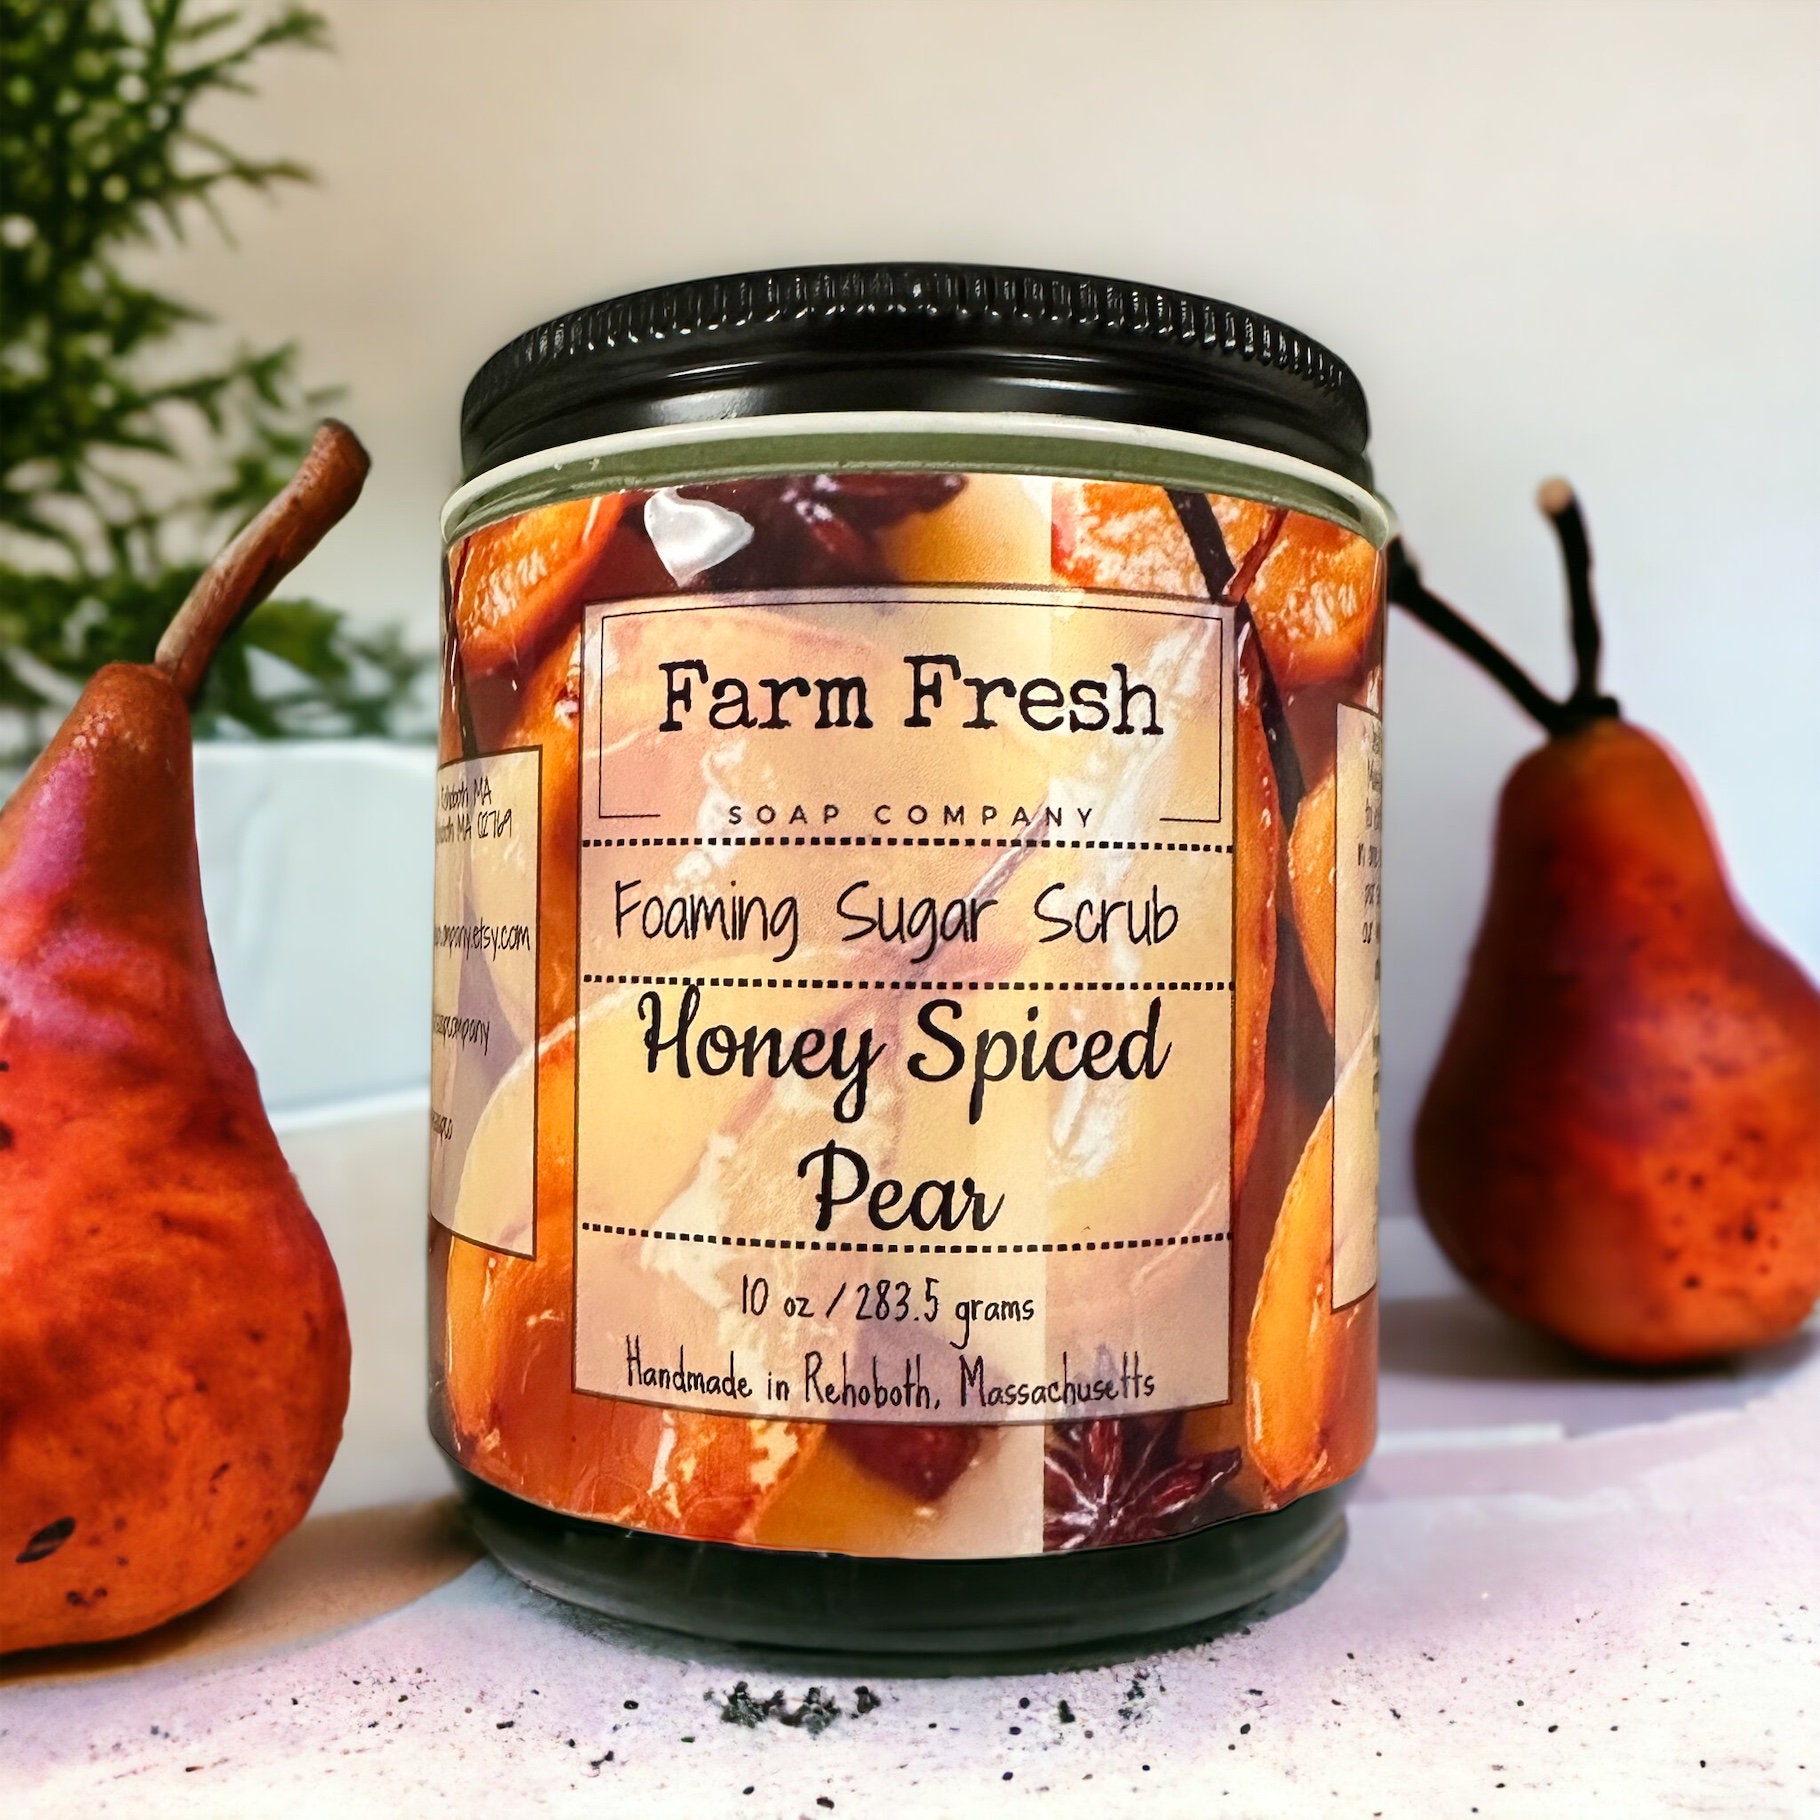 Honey Spiced Pear Wax Melts